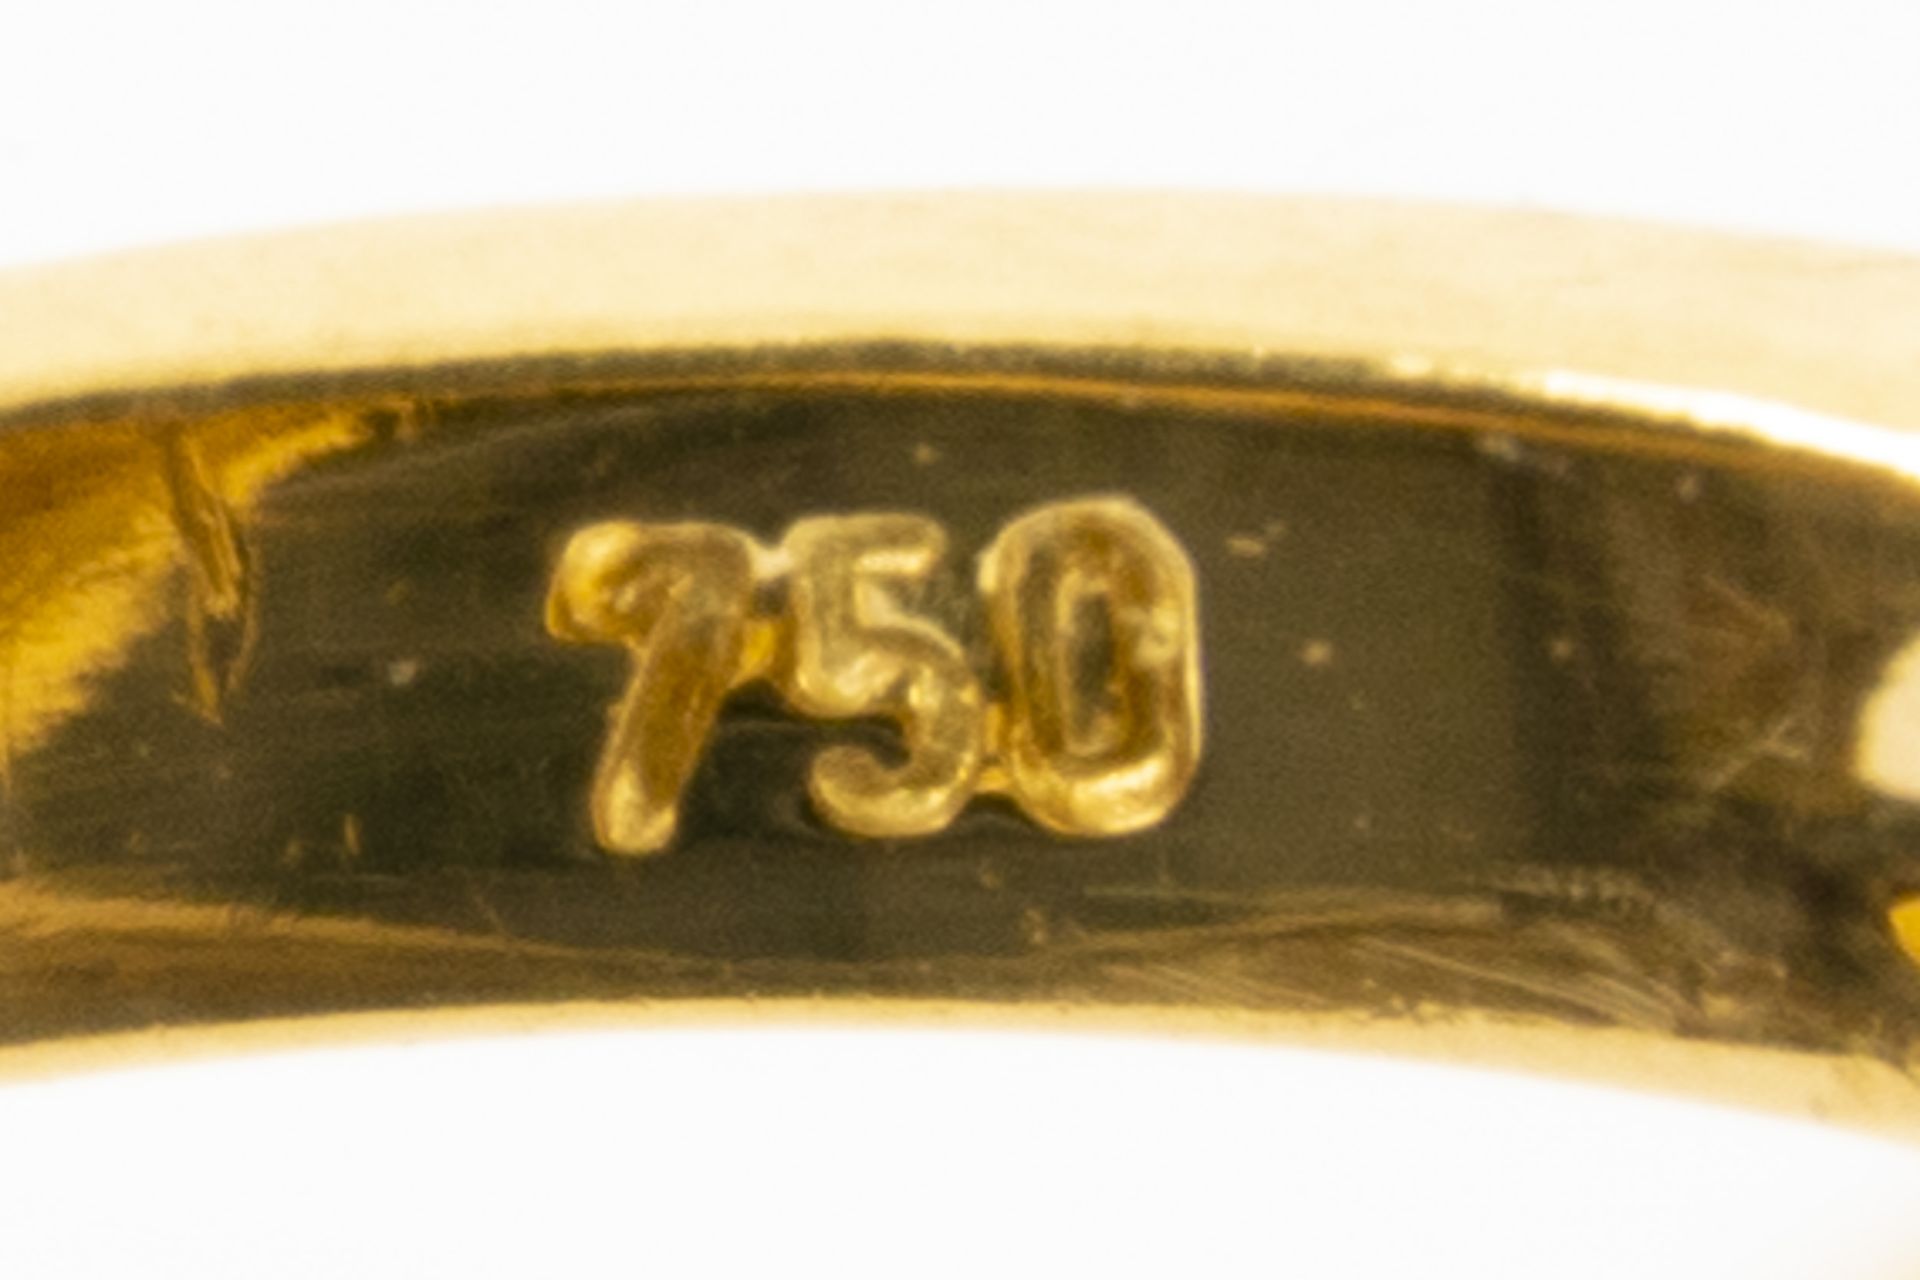 Prächtiger blütenförmiger 18K Gelbgold-Ring mittig mit Perle besetzt und von Rubinsplitterbesatz um - Image 6 of 7